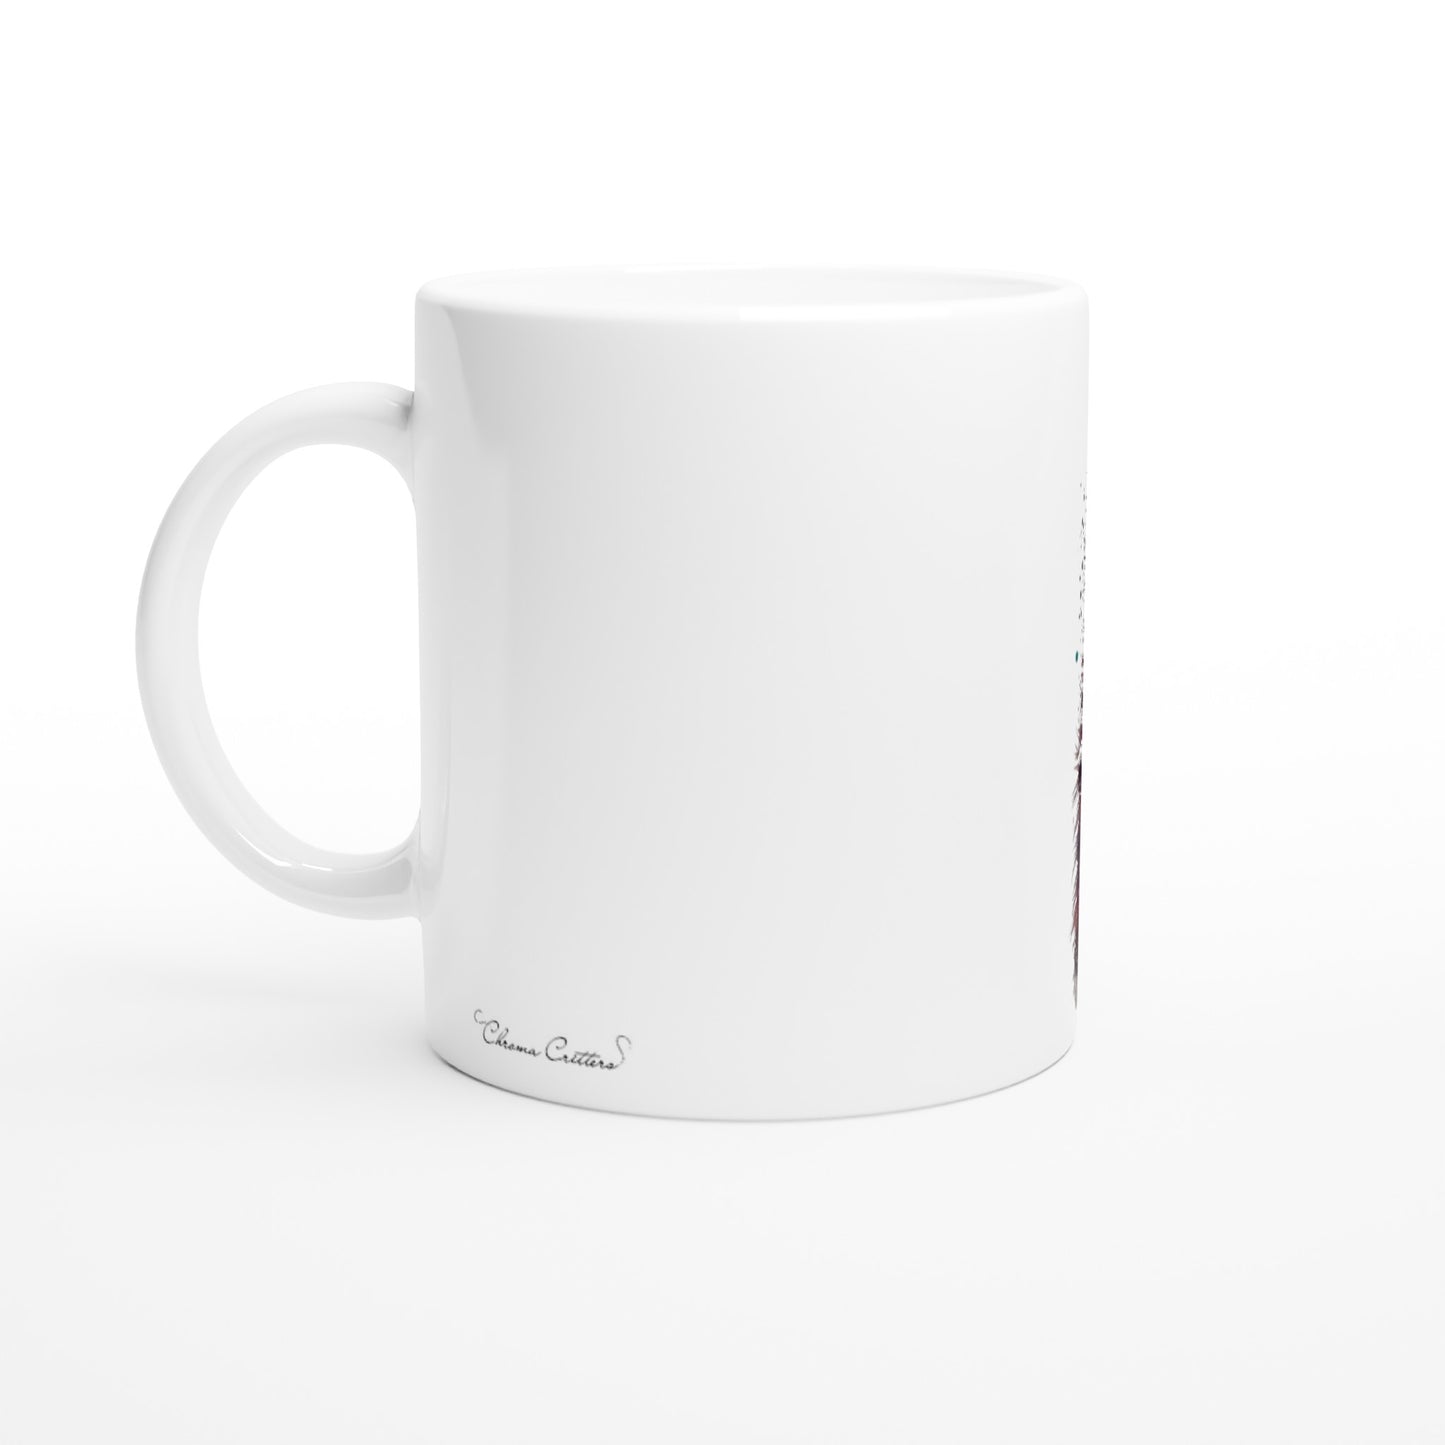 Sweet Kitten - 11oz Ceramic Mug